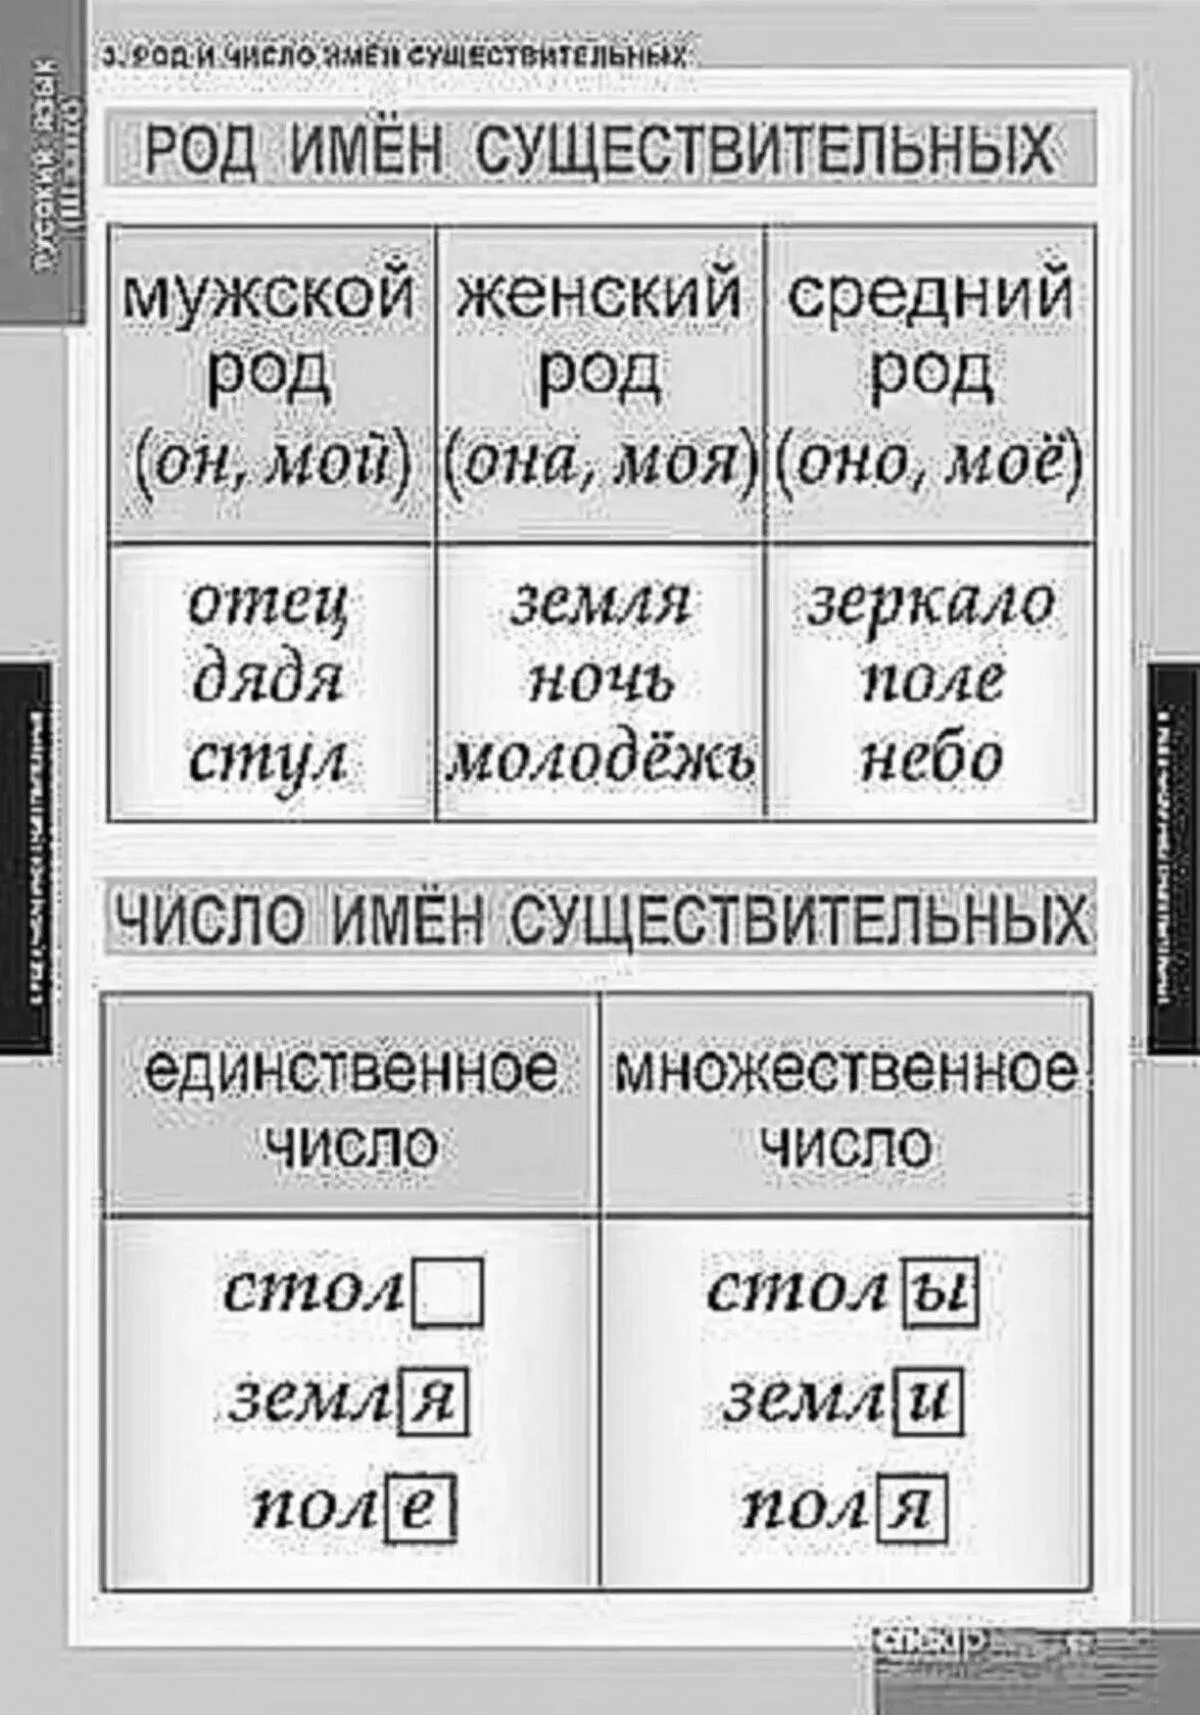 Про род имен существительных. Род и число имен существительных. Род и число имен существительных таблица. Число имен существительных таблица. Таблица русского языка.